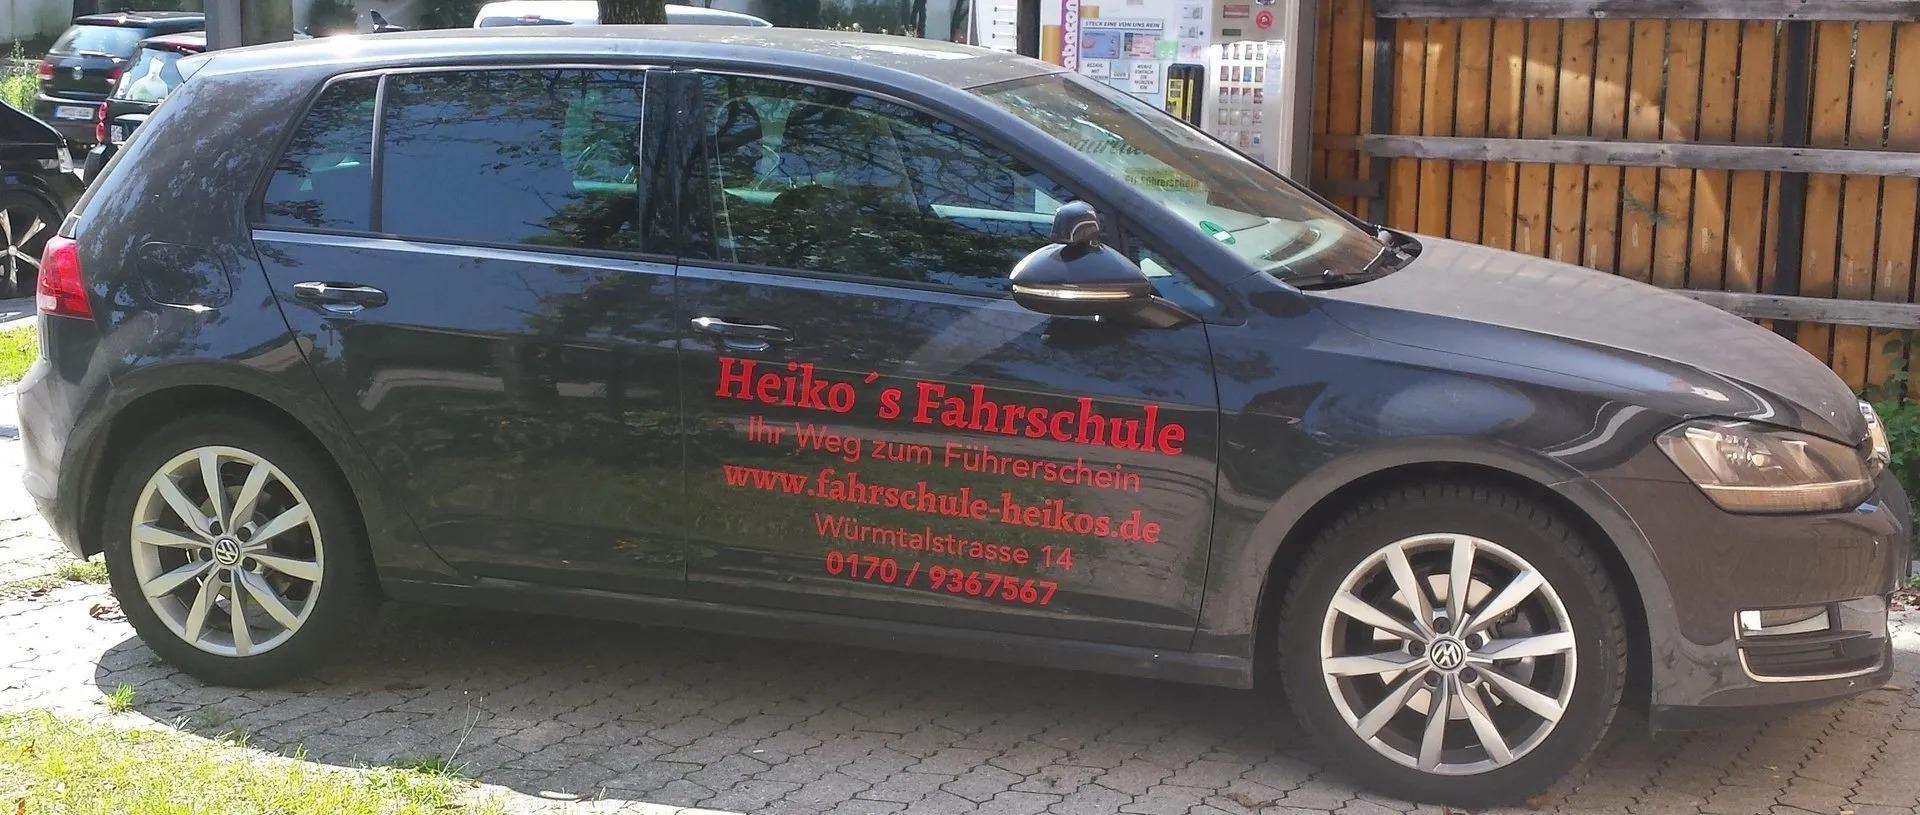 Kundenbild groß 4 Heiko's Fahrschule | Fahrtraining Führerschein Auto | Perlach München